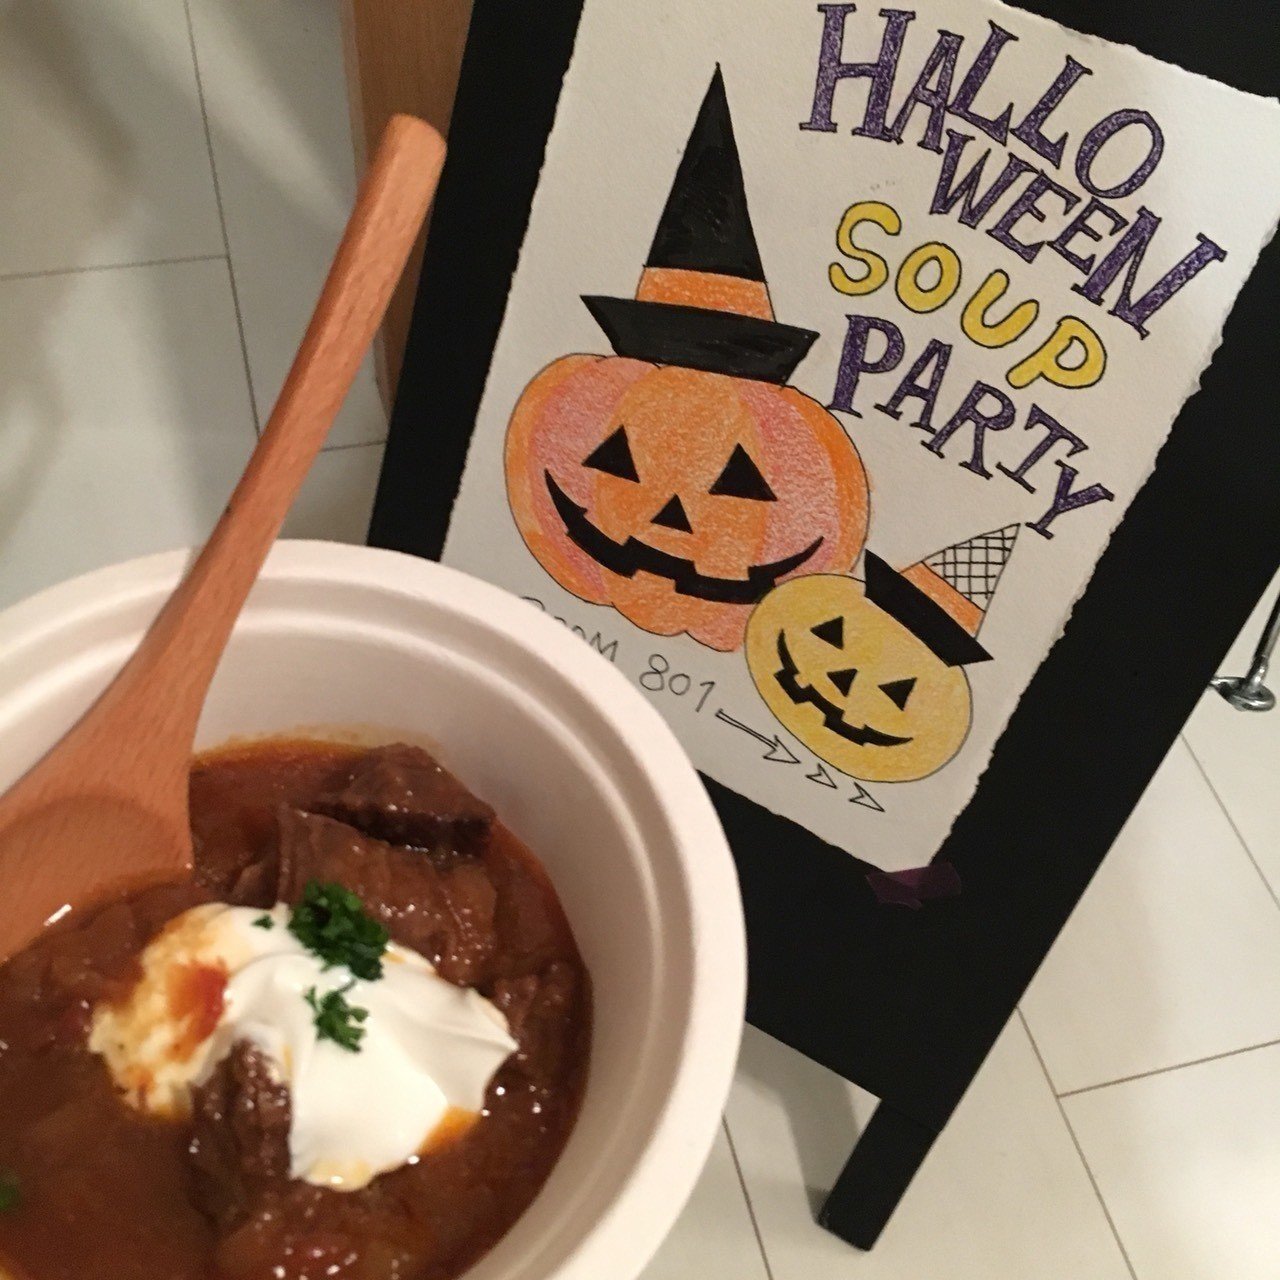 かぼちゃ星人のハロウィン スープ パーティ 有賀 薫 Note